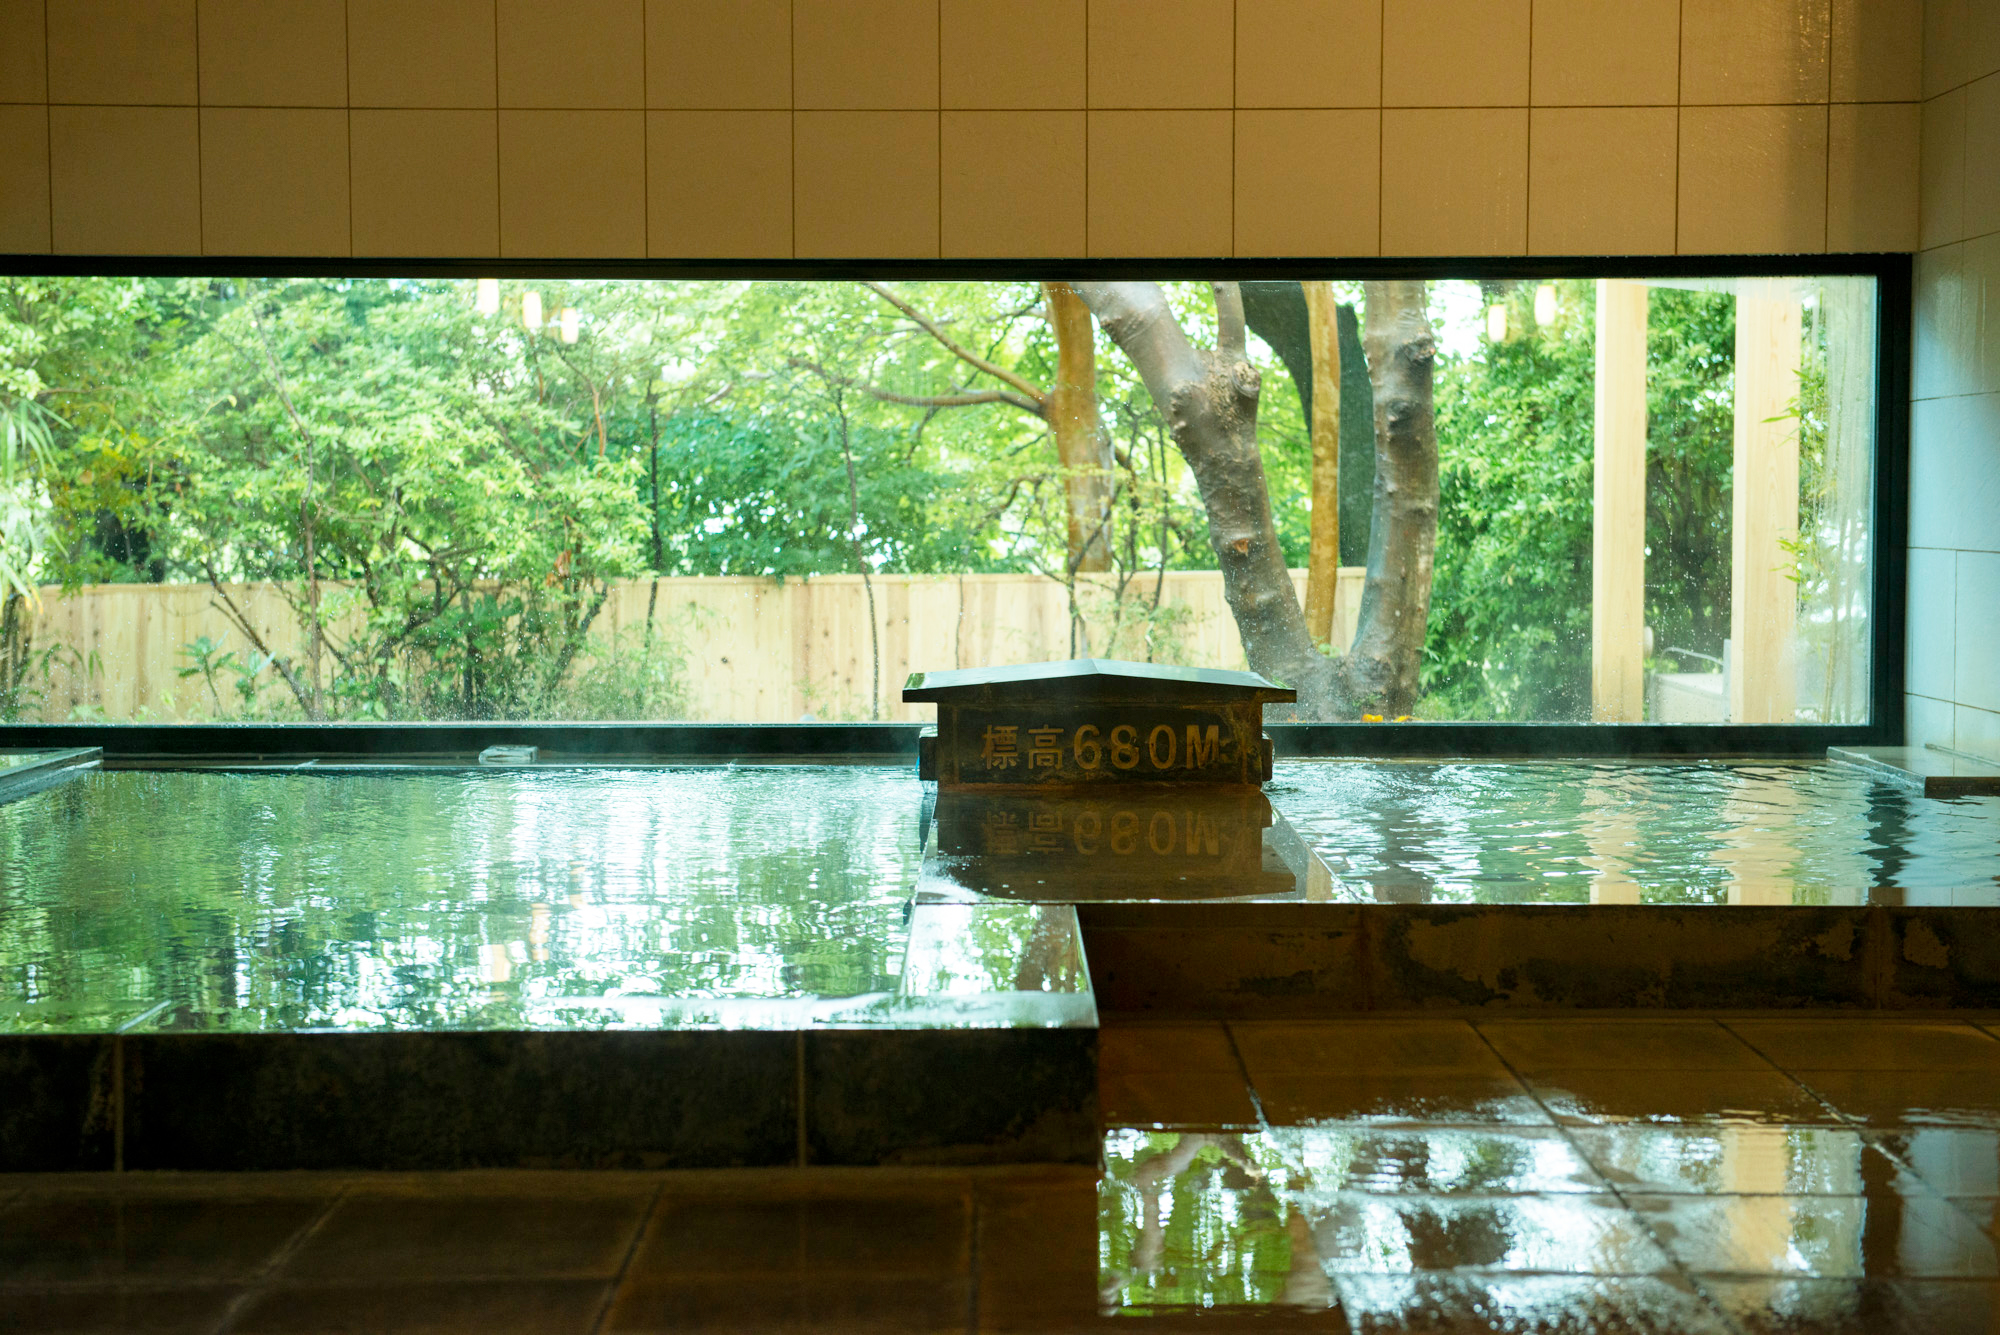 強羅と大涌谷から引く二つの源泉が自慢。内湯のほか露天風呂も。